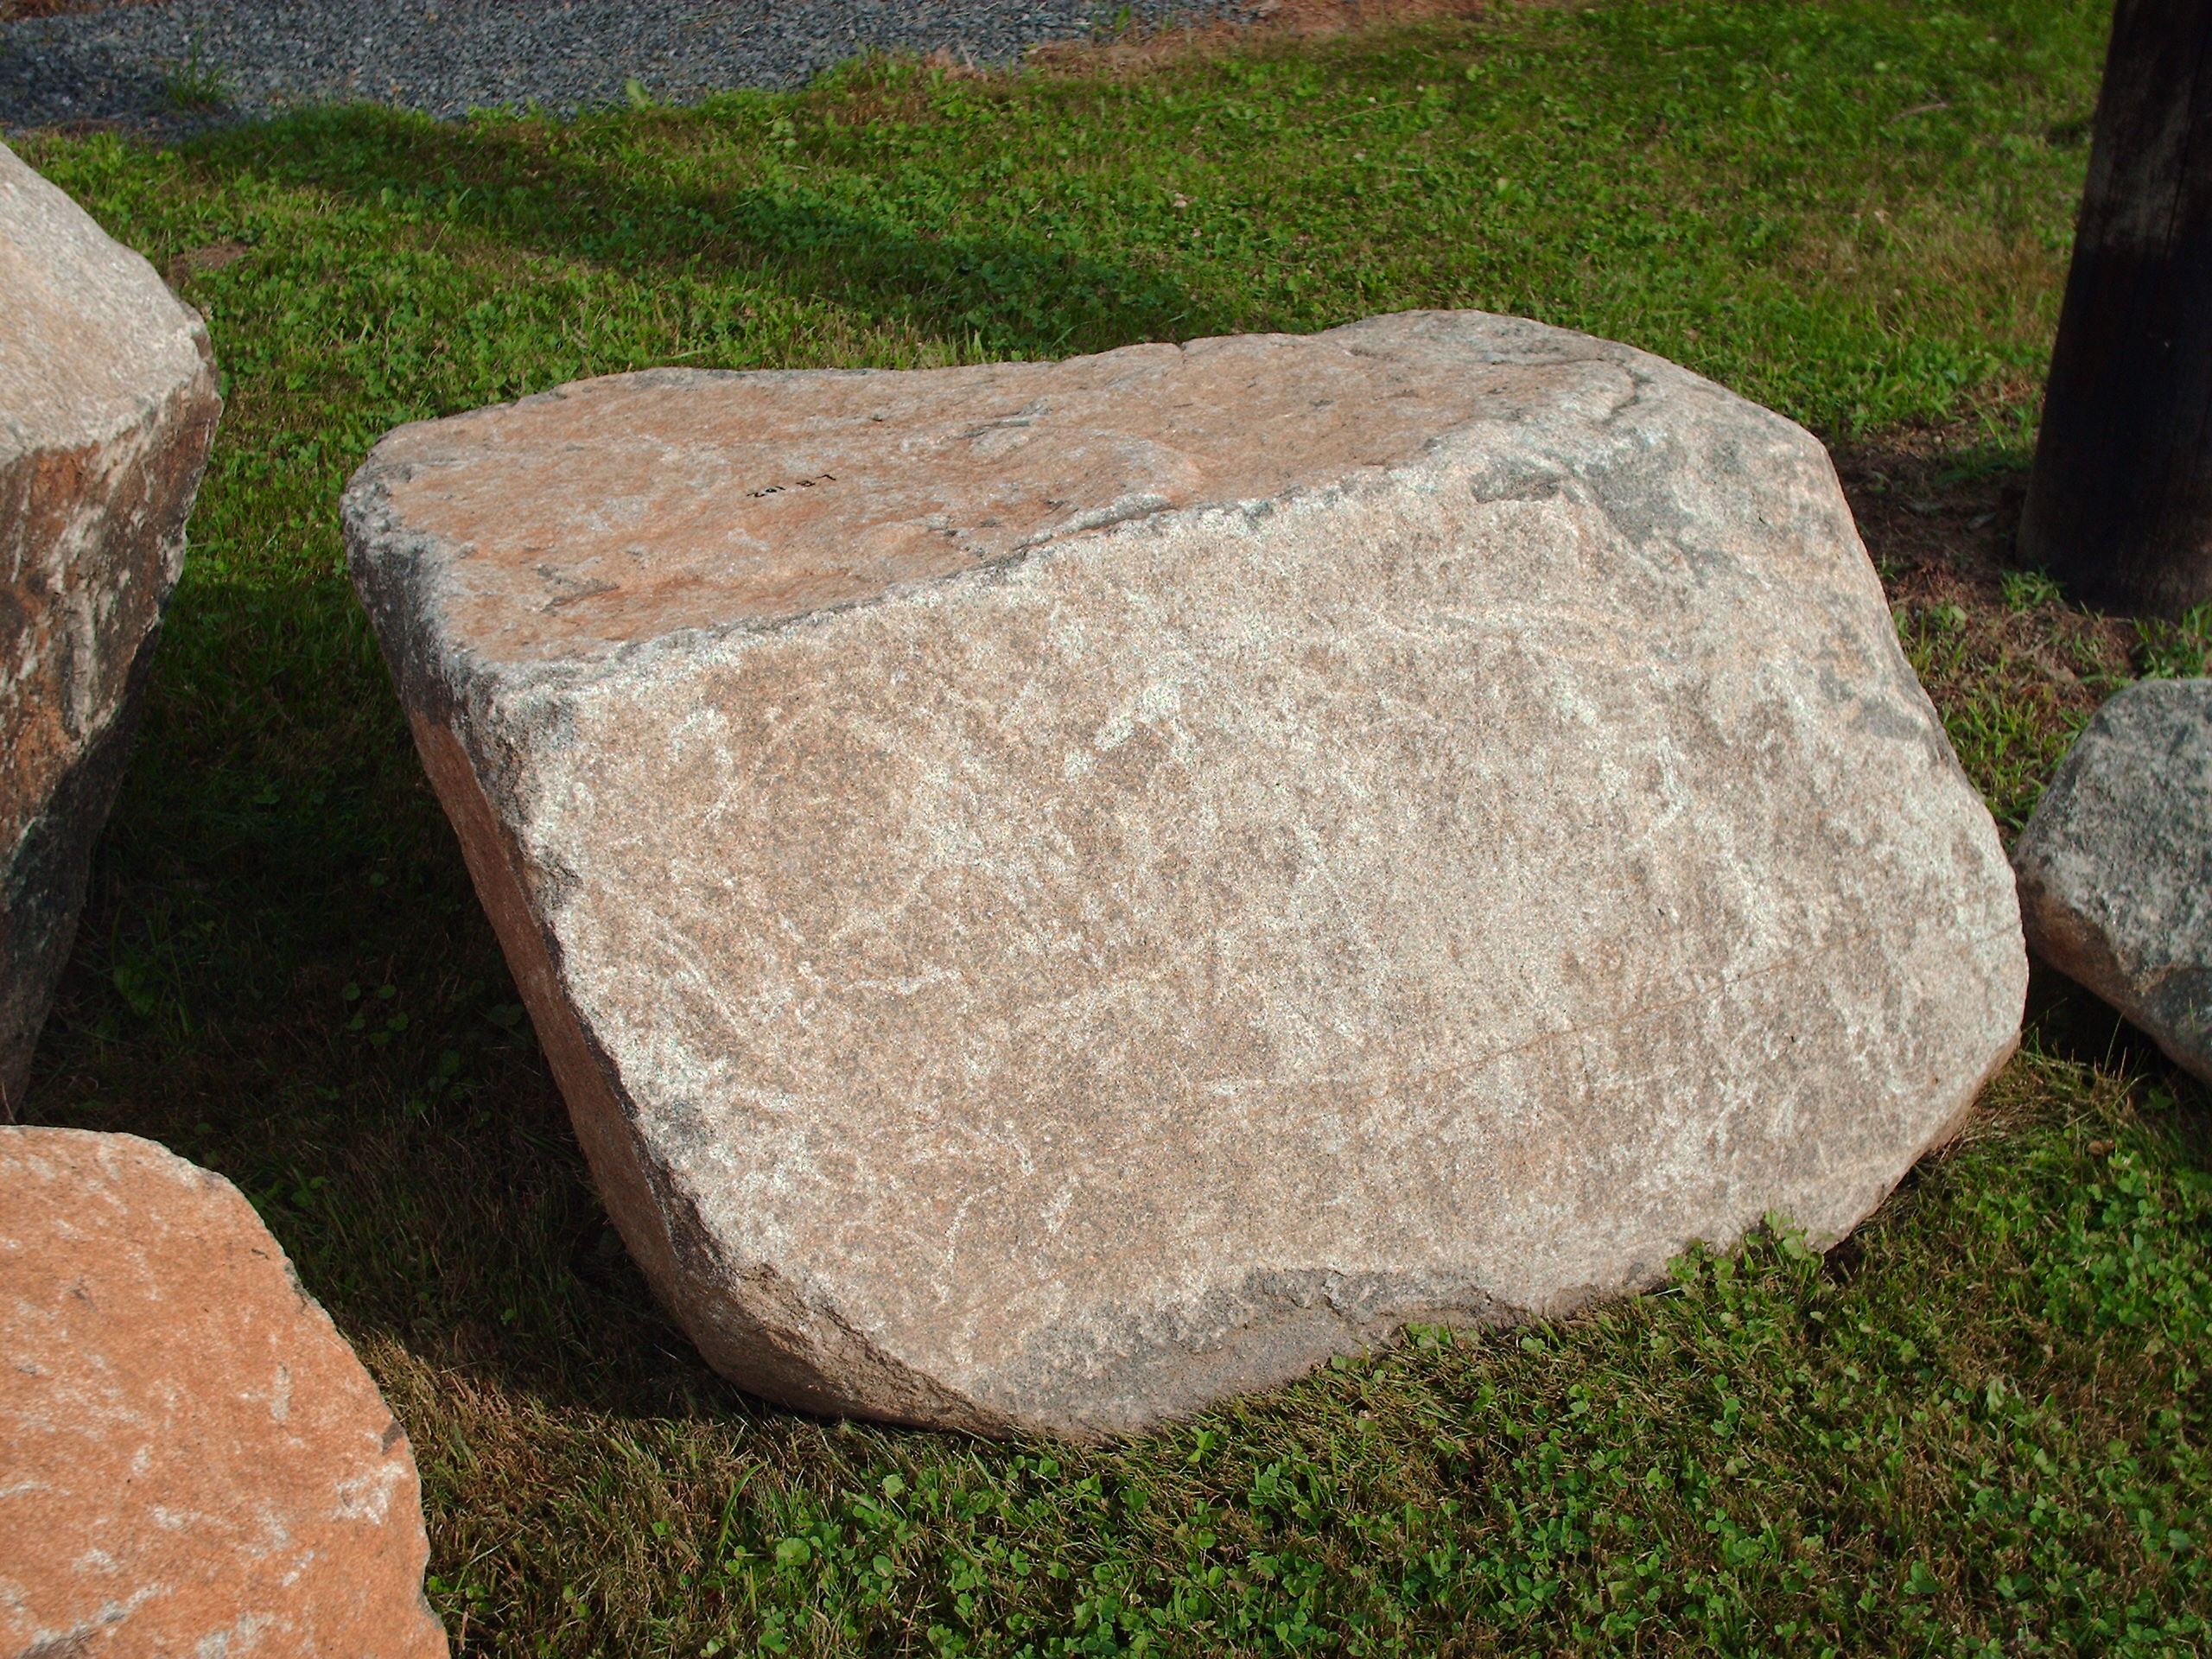 Large Rocks for Garden Landscaping - Popular Landscaping Rocks ...